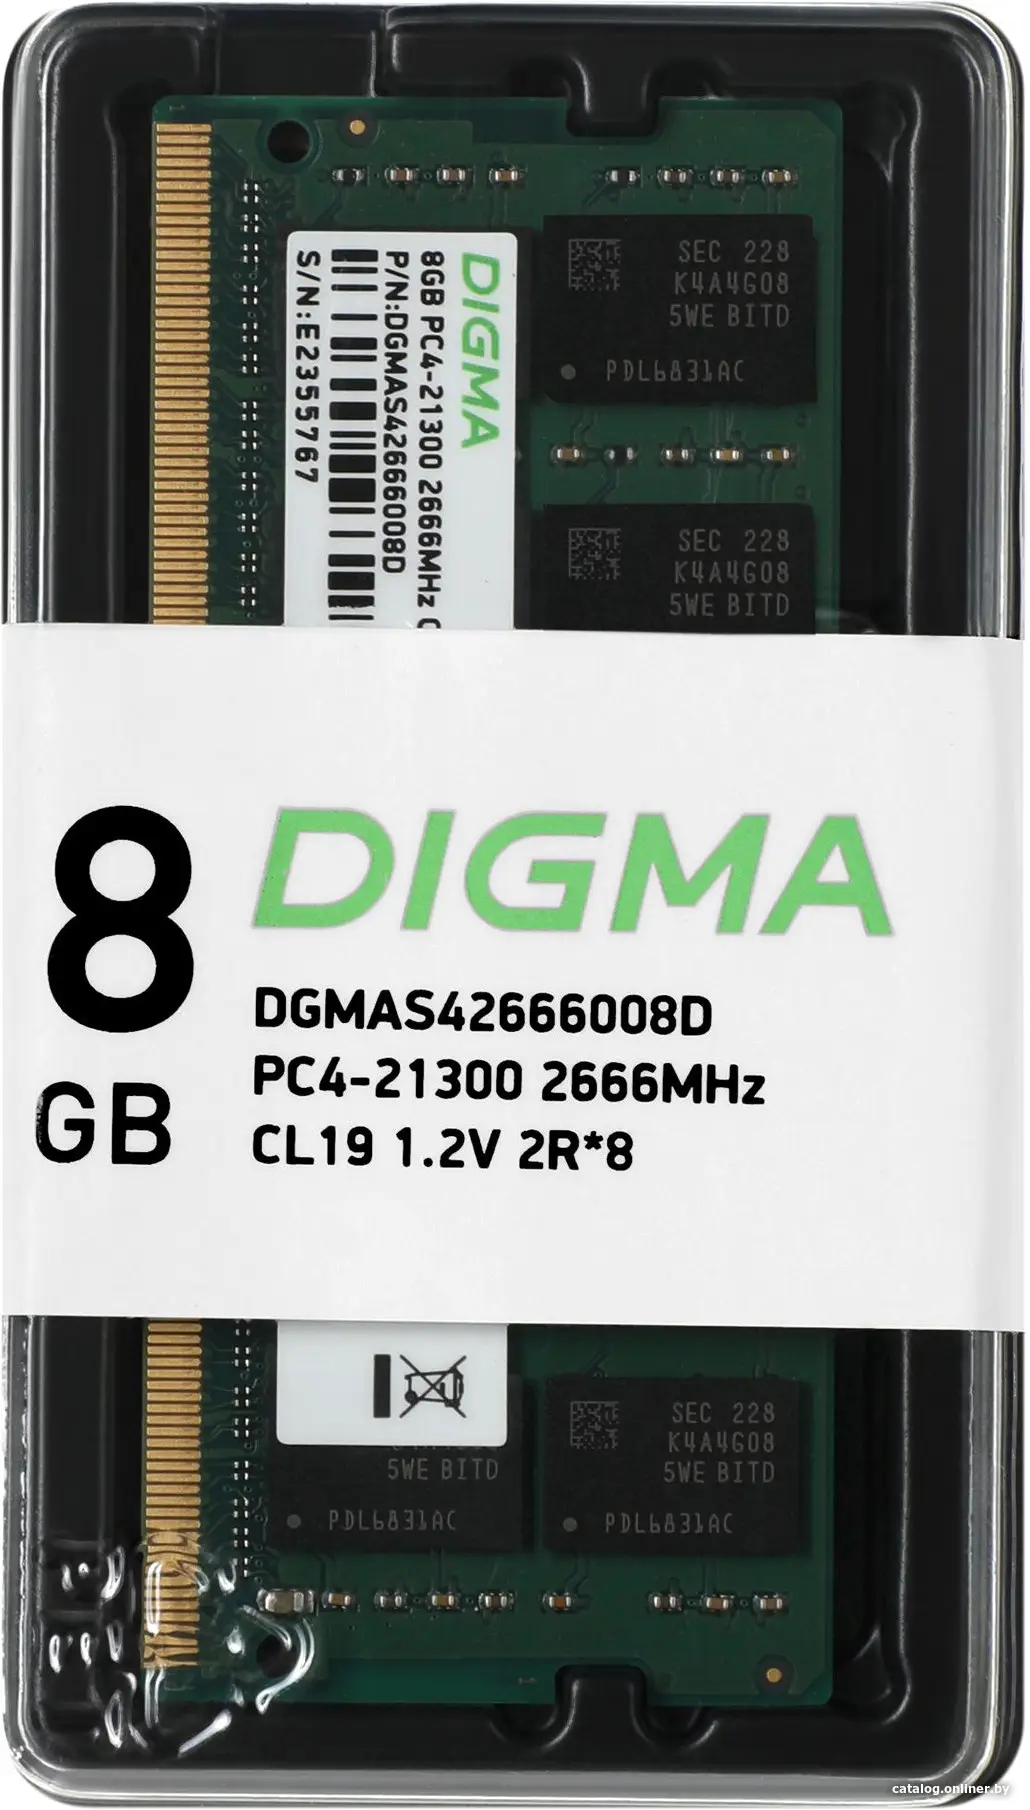 Купить Оперативная память Digma DDR4 8Gb 2666MHz (DGMAS42666008D), цена, опт и розница